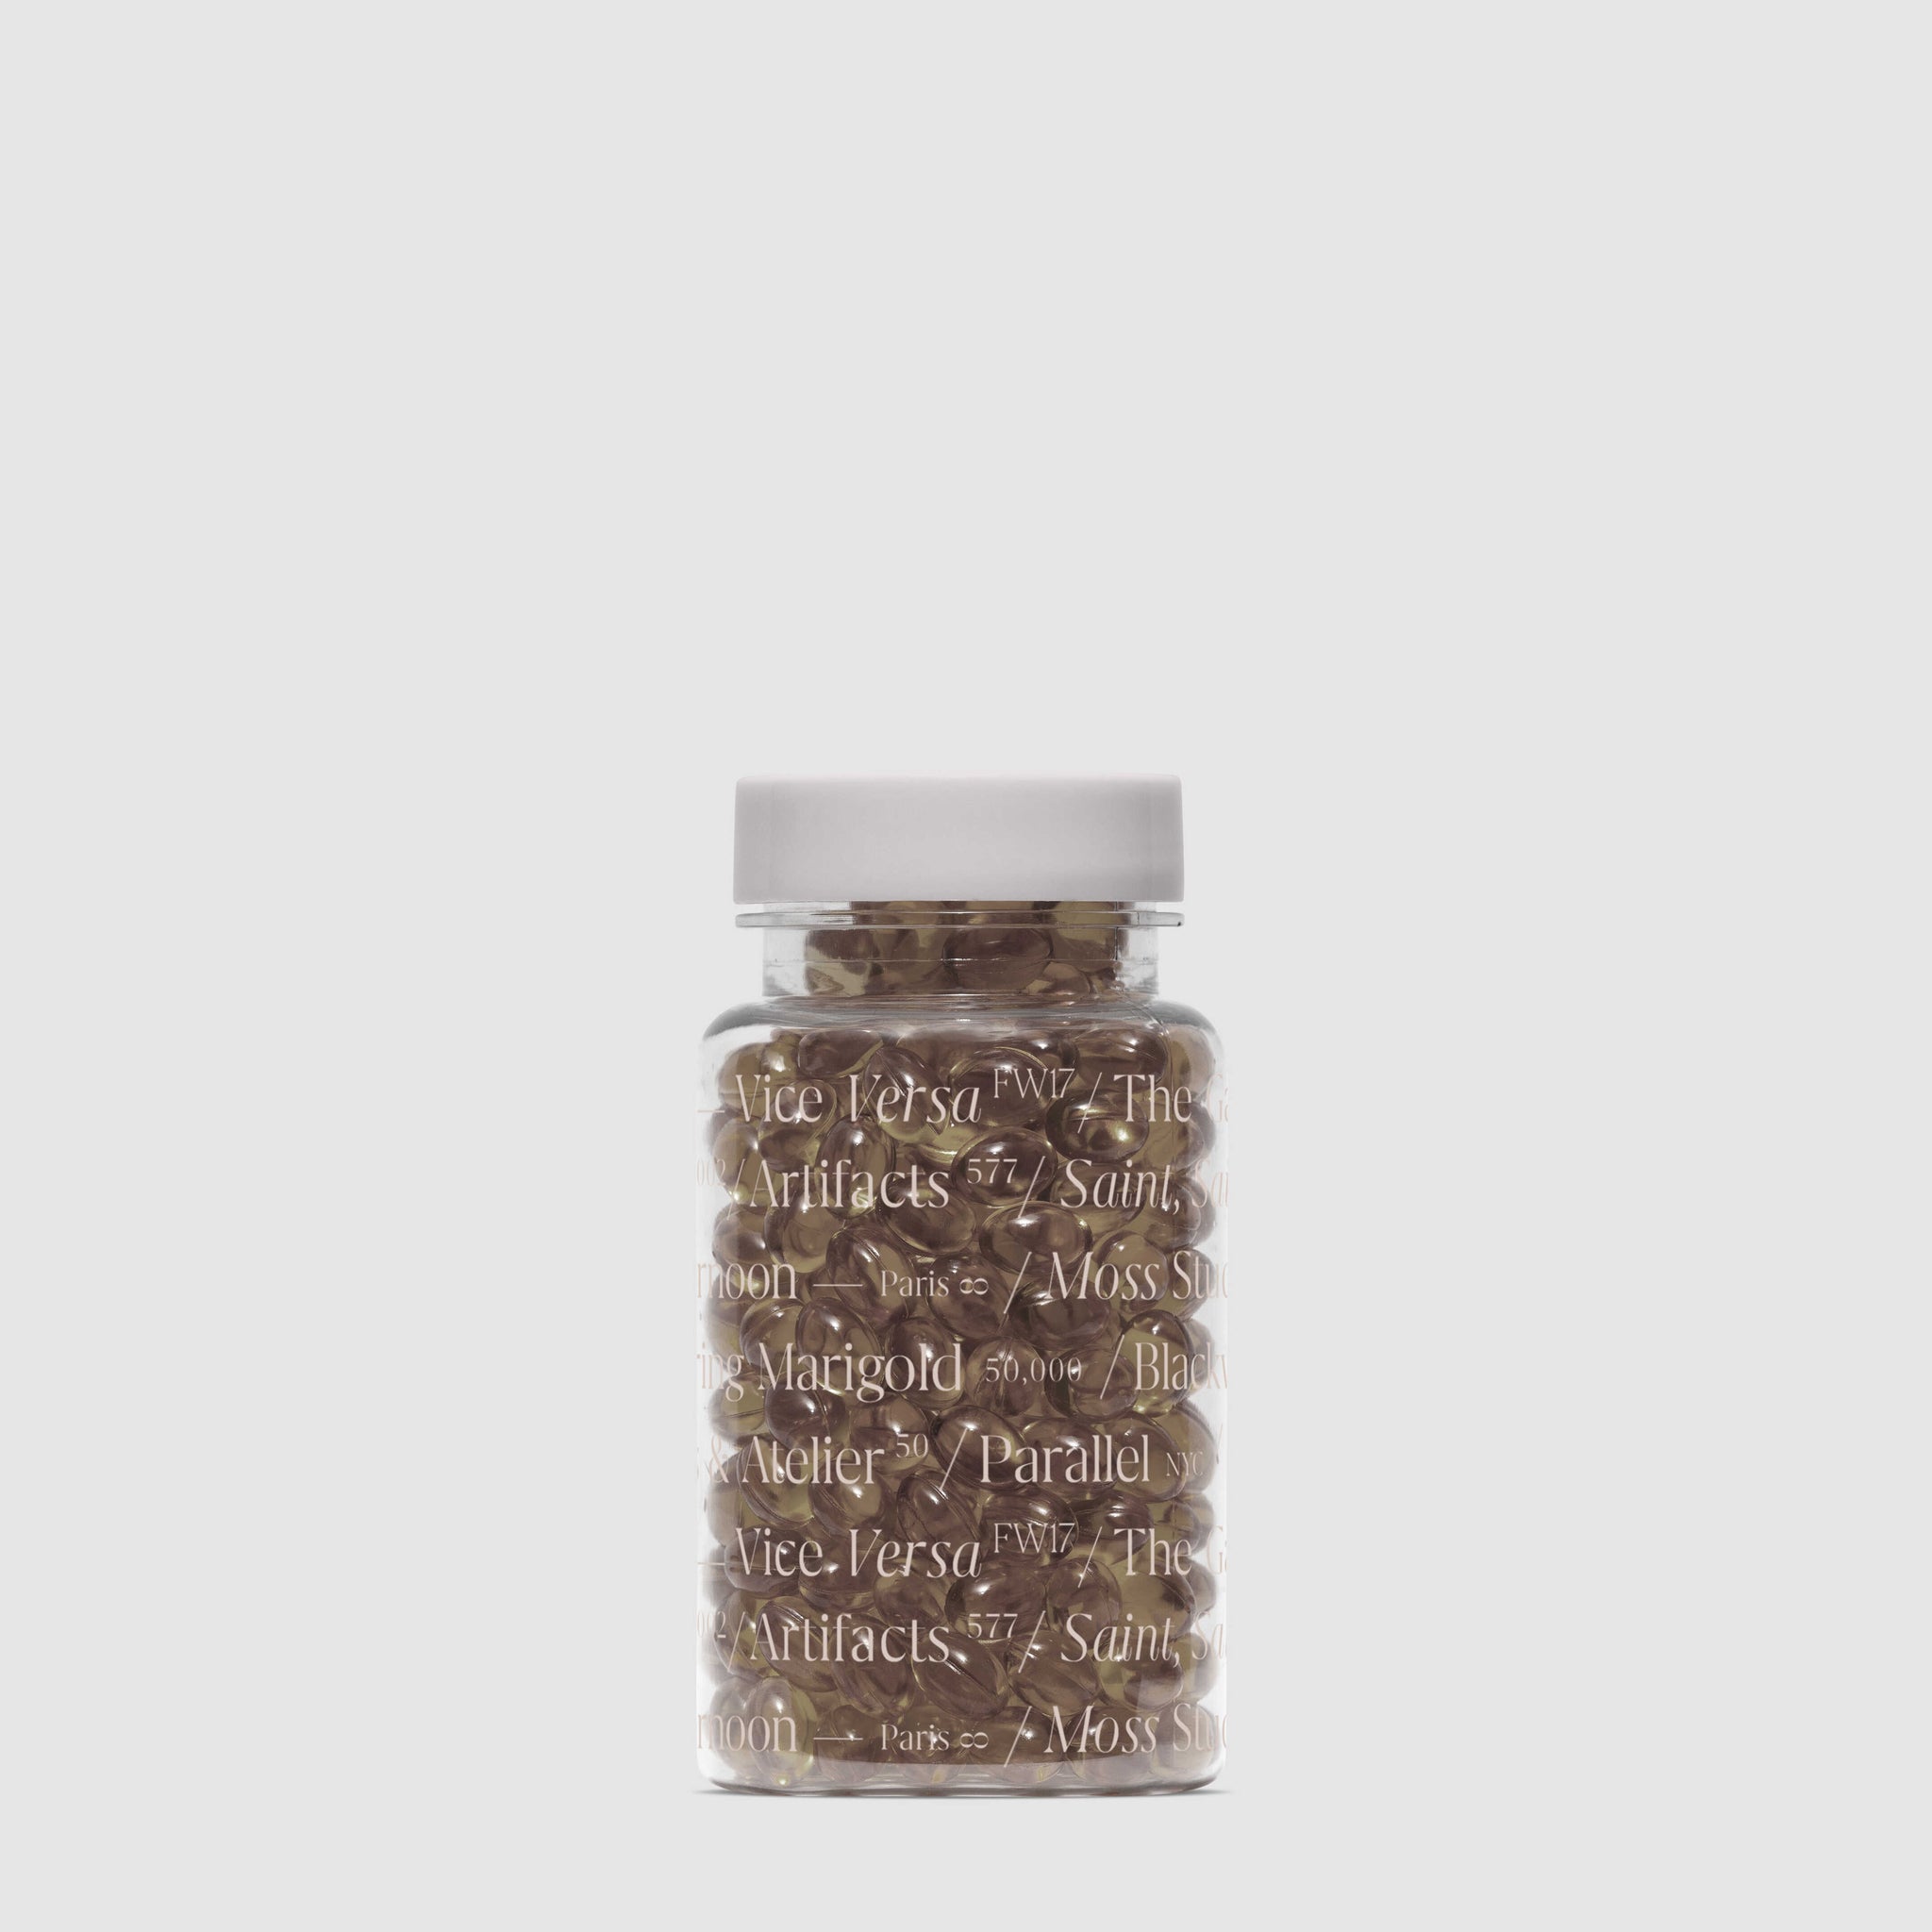 Vitamin Bottle Mockup No. 8 - Copal Studio Packaging Mockups For Designers